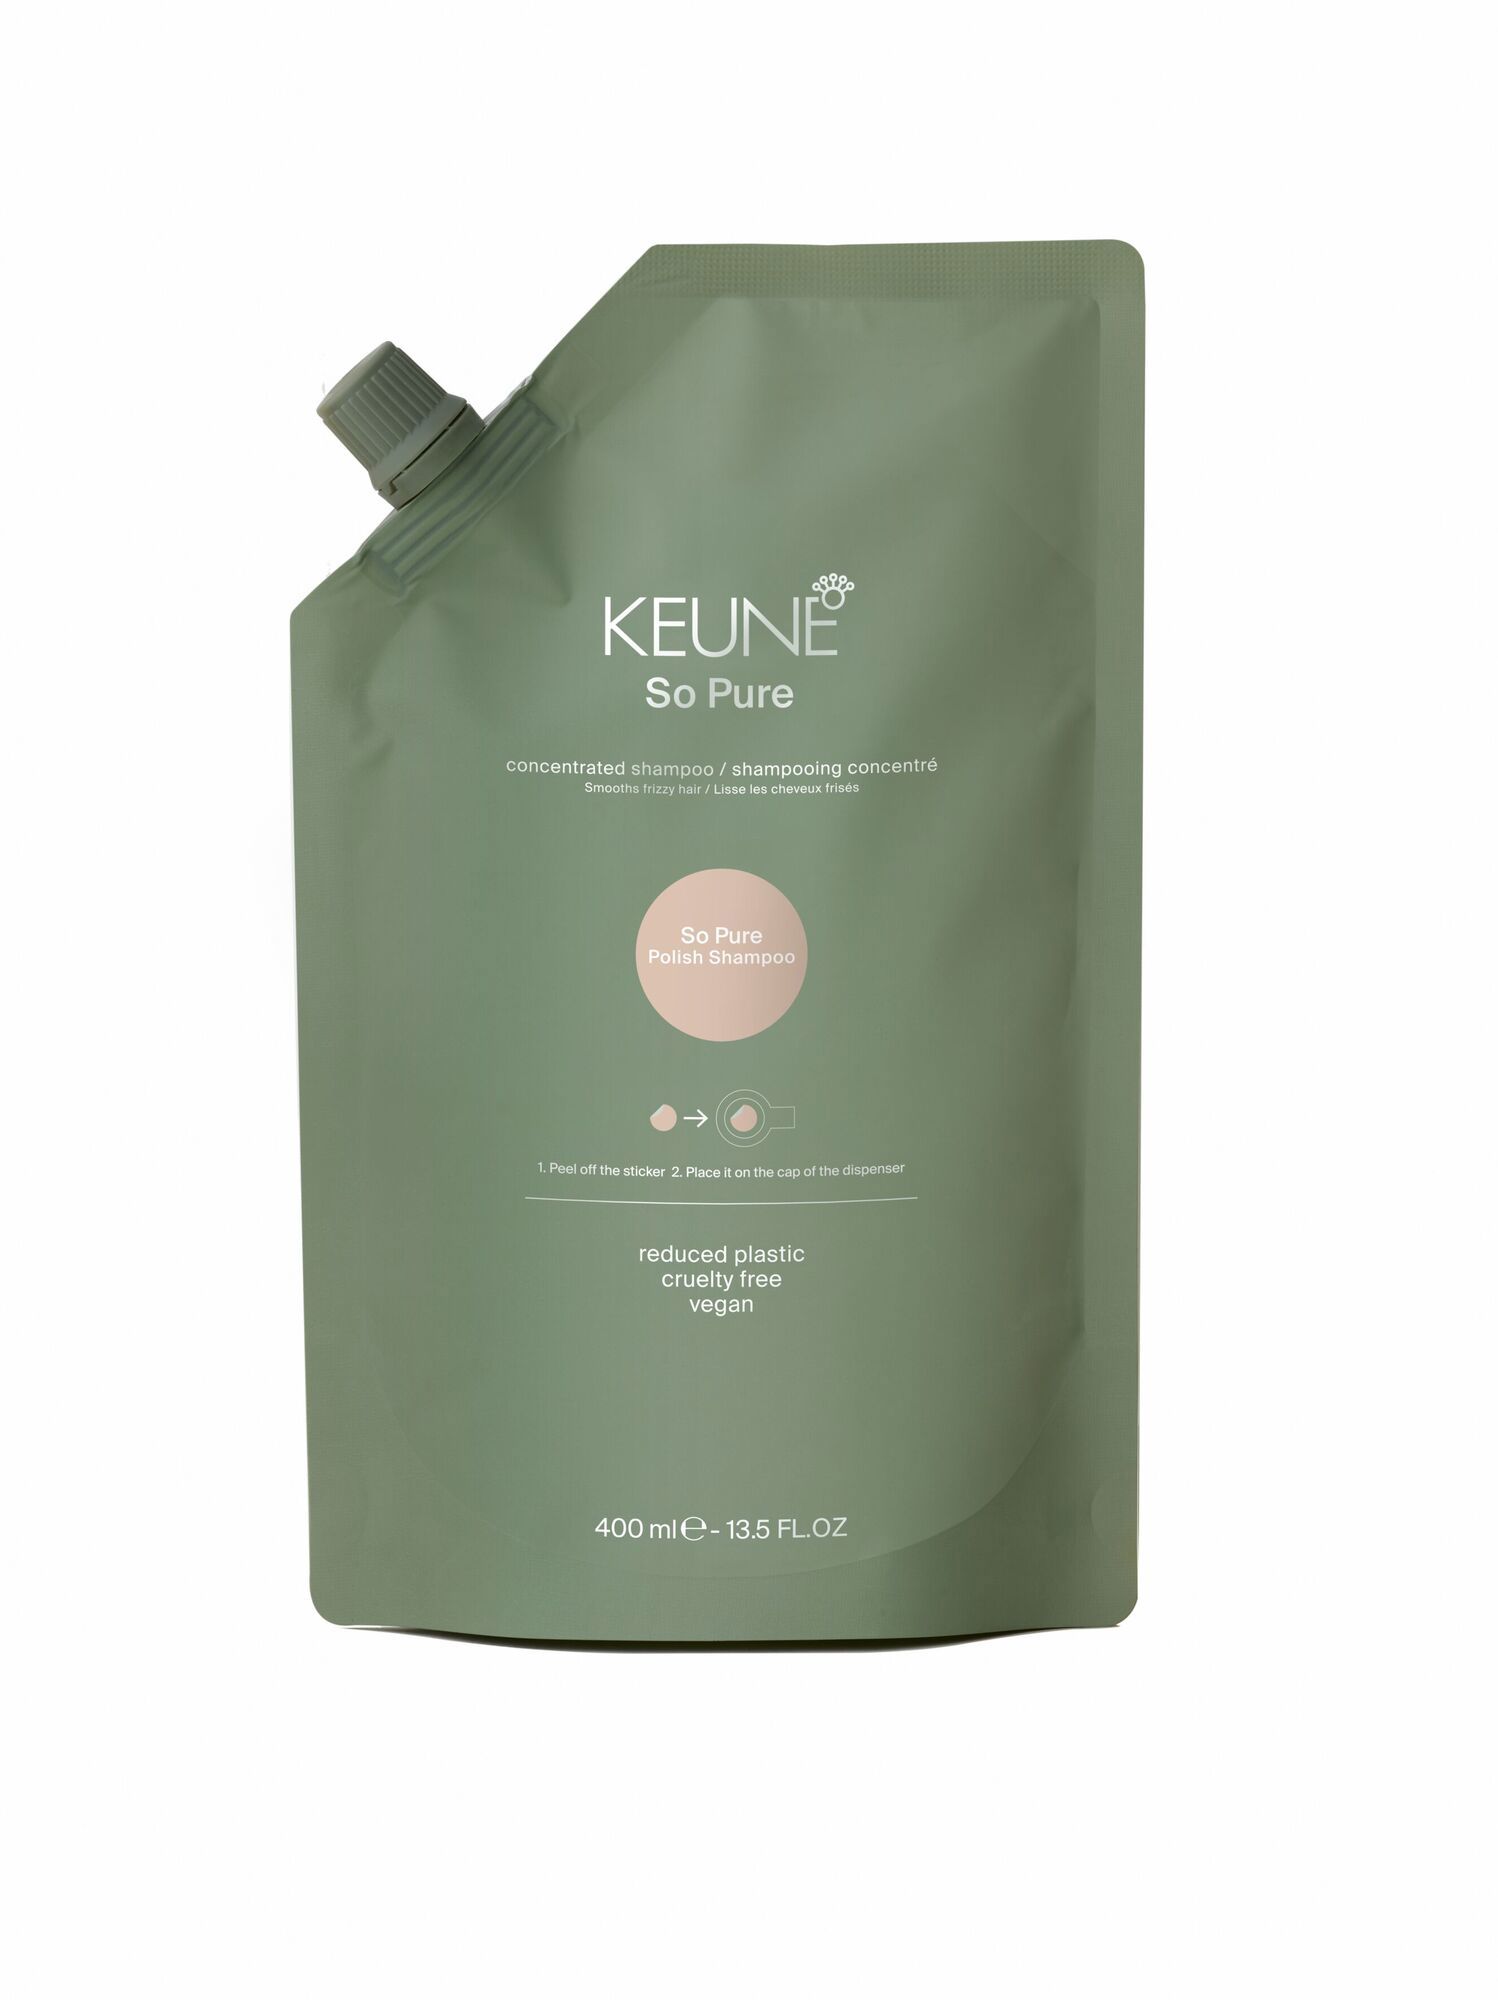 Shampoing So Pure Polish de Keune : Soins capillaires naturels pour des cheveux lisses et contrôle des frisottis. Découvrez-le maintenant sur keune.ch !